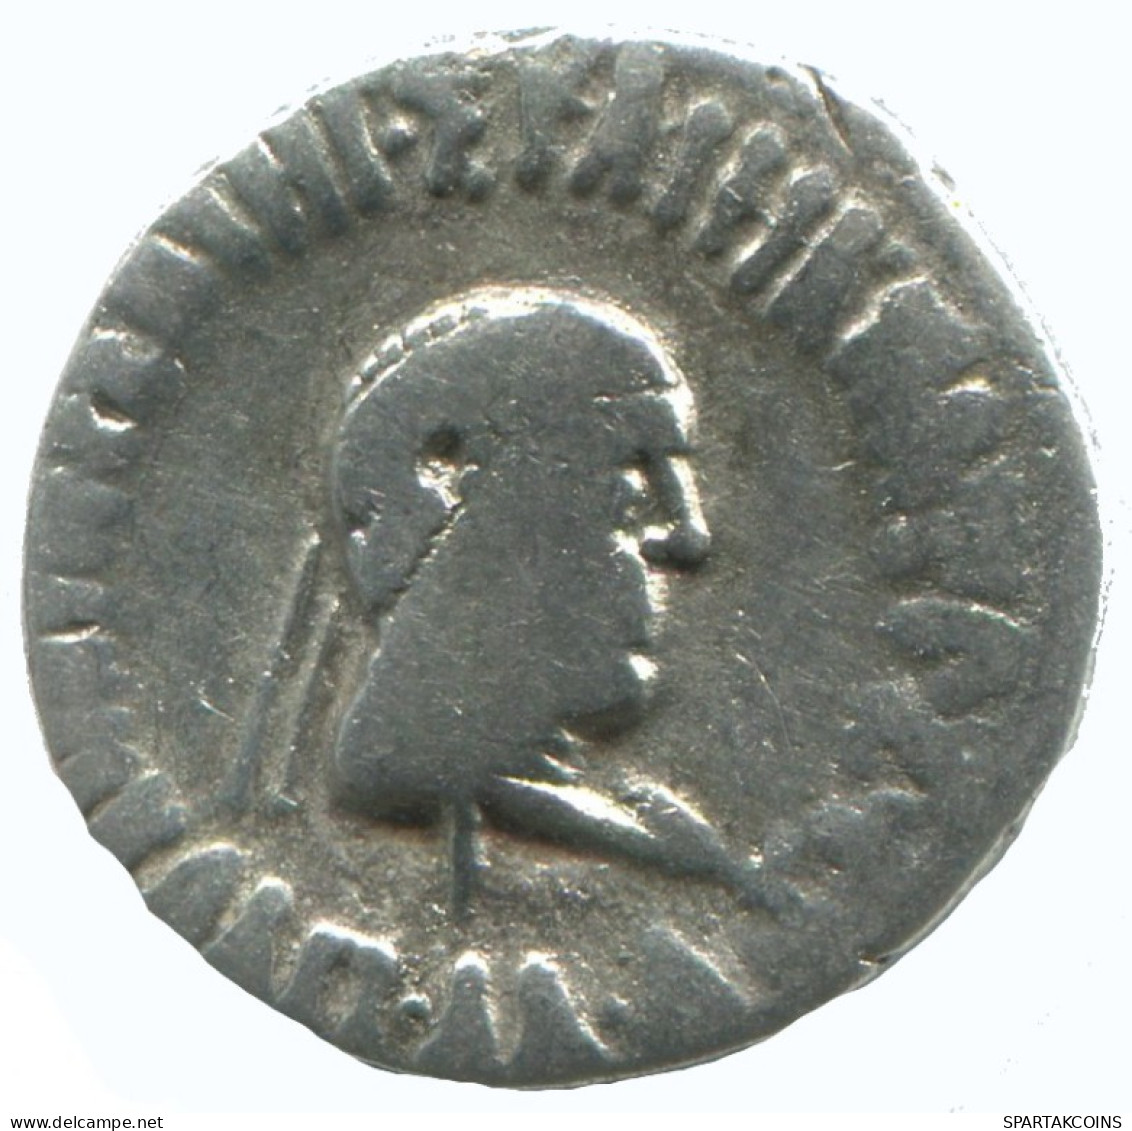 BAKTRIA APOLLODOTOS II SOTER PHILOPATOR MEGAS AR DRACHM 2.2g/18mm #AA371.40.F.A - Griechische Münzen